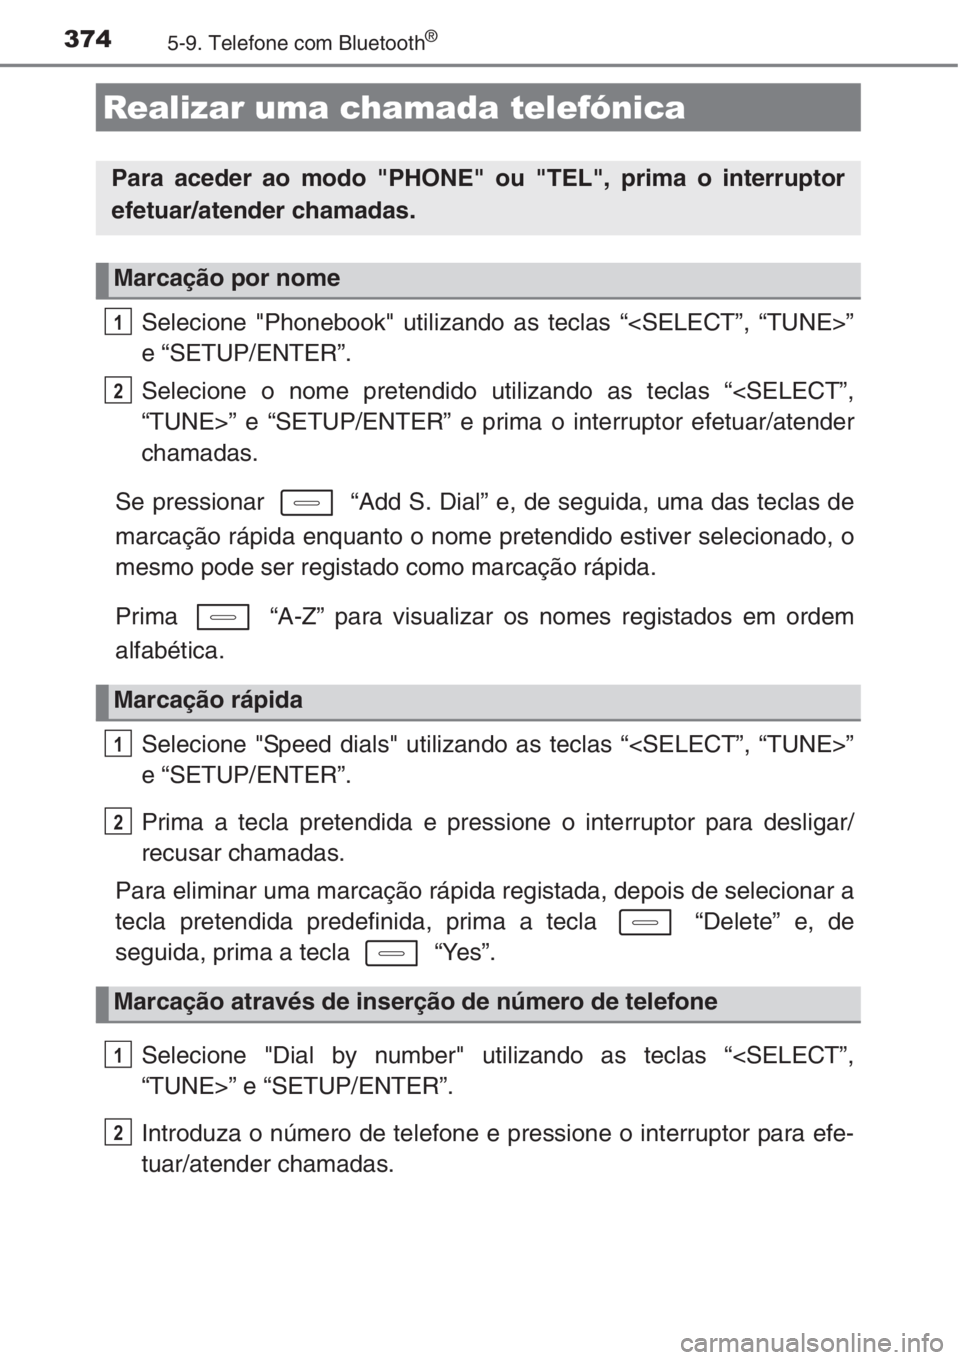 TOYOTA AURIS 2016  Manual de utilização (in Portuguese) 3745-9. Telefone com Bluetooth®
Selecione "Phonebook" utilizando as teclas “<SELECT”, “TUNE>”
e “SETUP/ENTER”.
Selecione o nome pretendido utilizando as teclas “<SELECT”,
“T